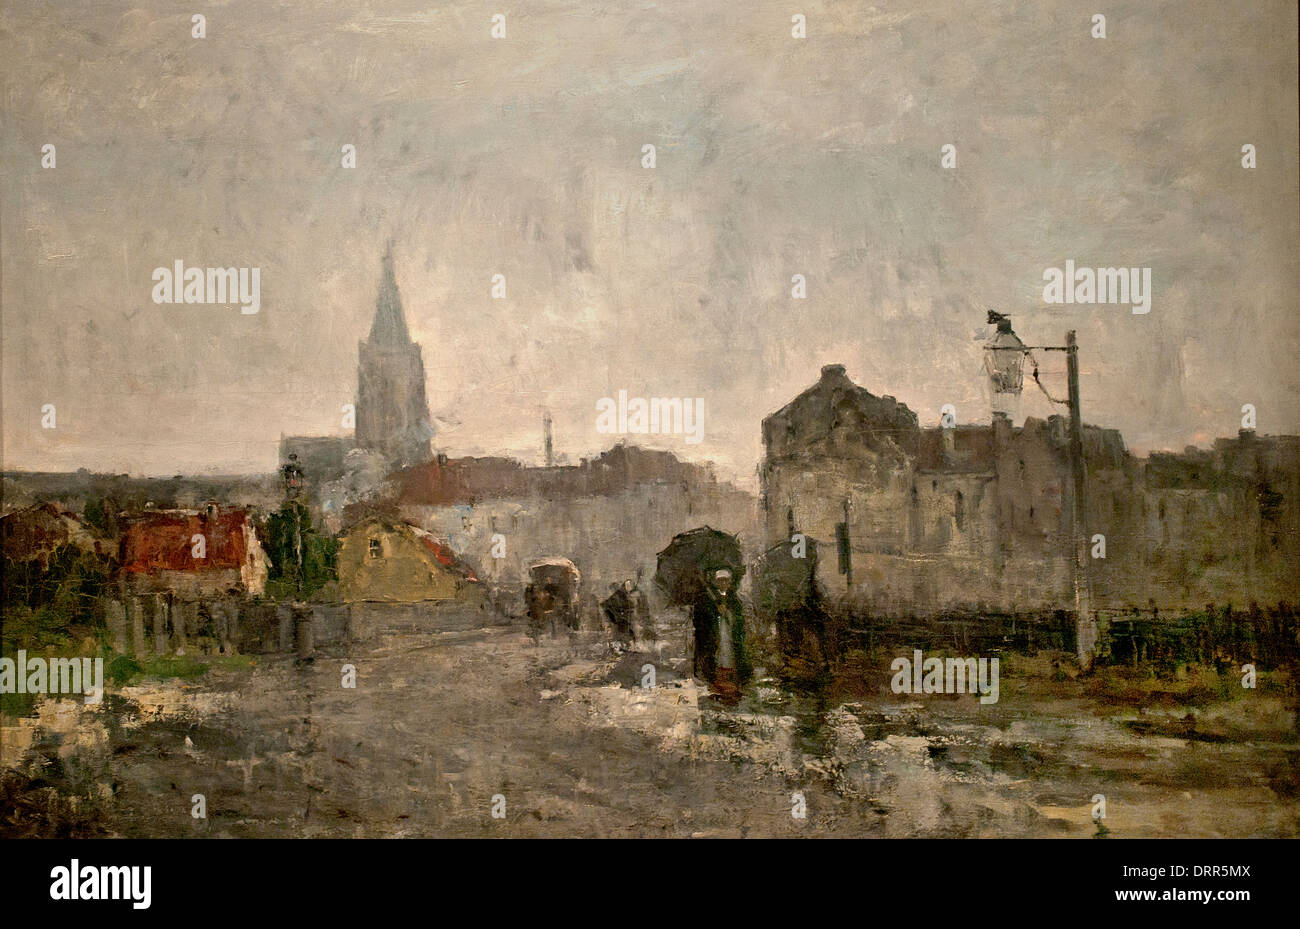 Mañana lluviosa por Guillaume Vogels 1836-1896 Bélgica aquarellist belga y dibujante Foto de stock